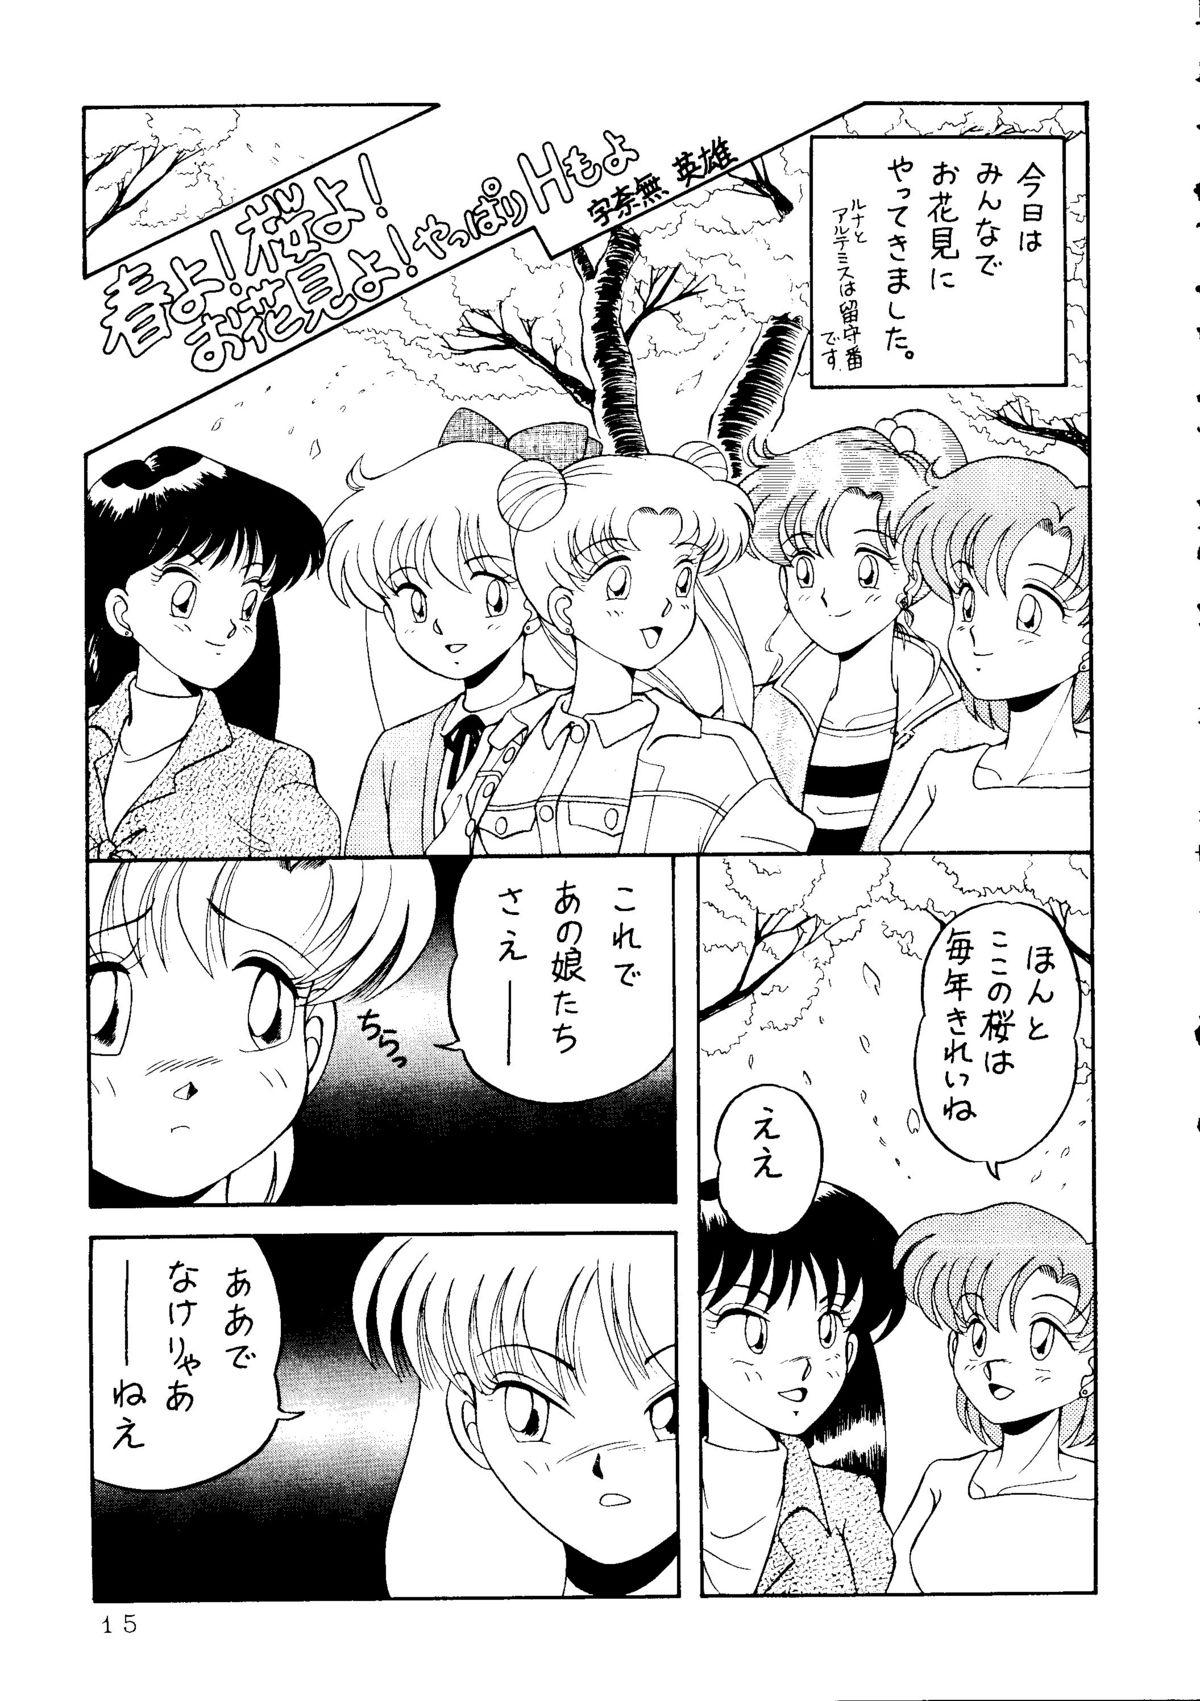 Wet Cunt MAKE-UP R - Sailor moon Hunks - Page 12